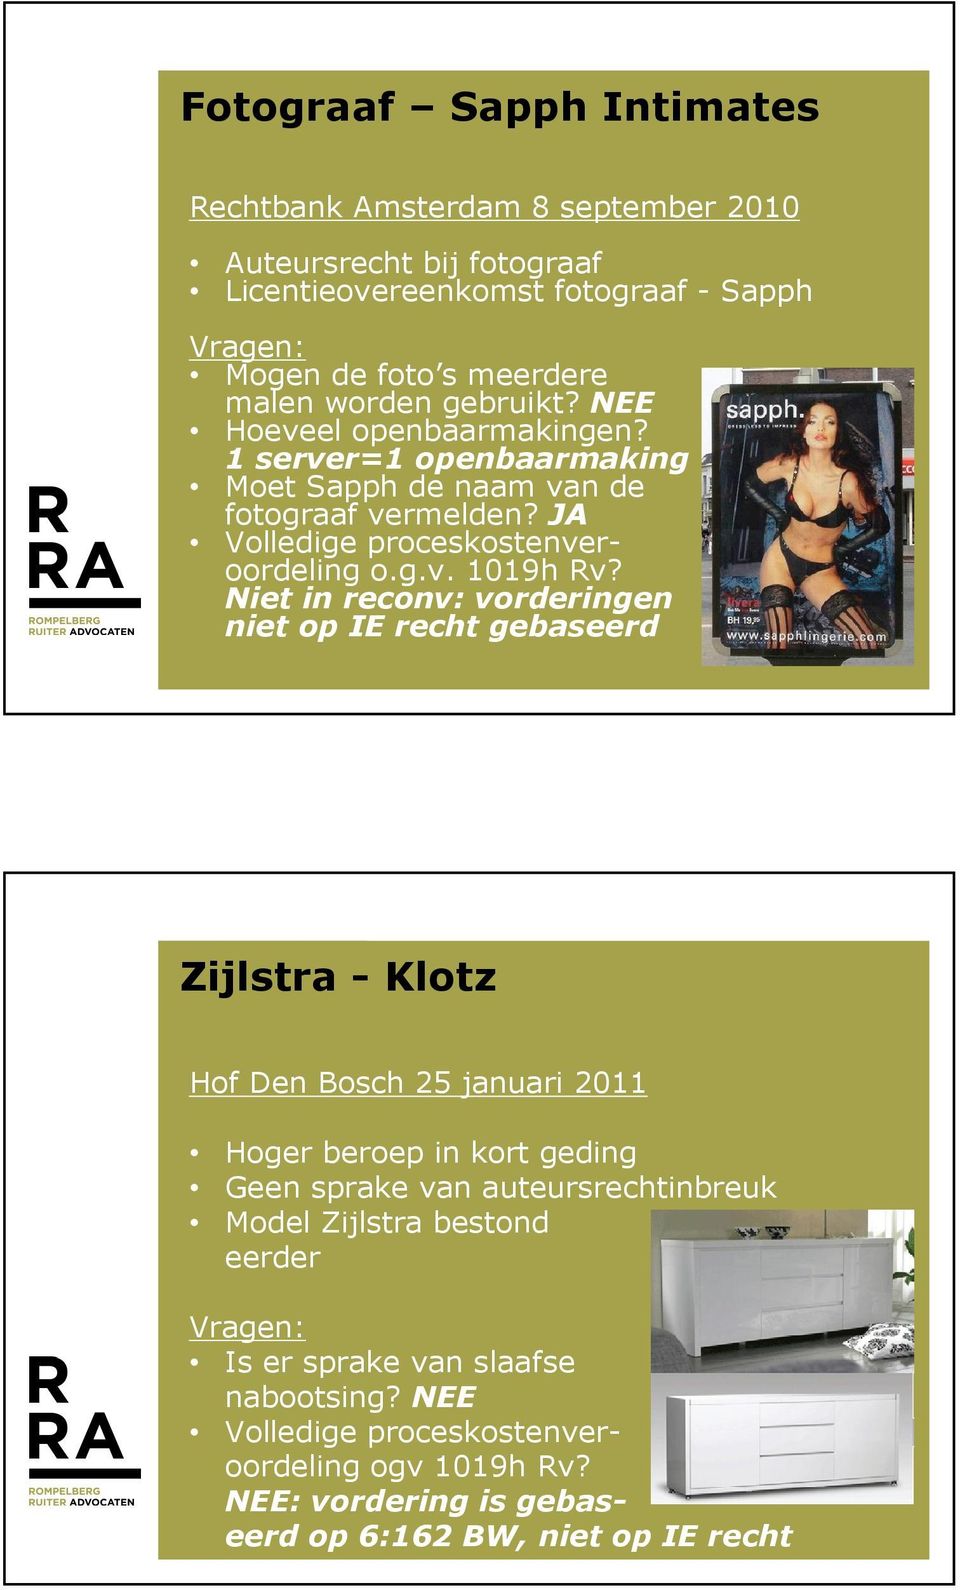 Niet in reconv: vorderingen niet op IE recht gebaseerd Zijlstra - Klotz Hof Den Bosch 25 januari 2011 Hoger beroep in kort geding Geen sprake van auteursrechtinbreuk Model